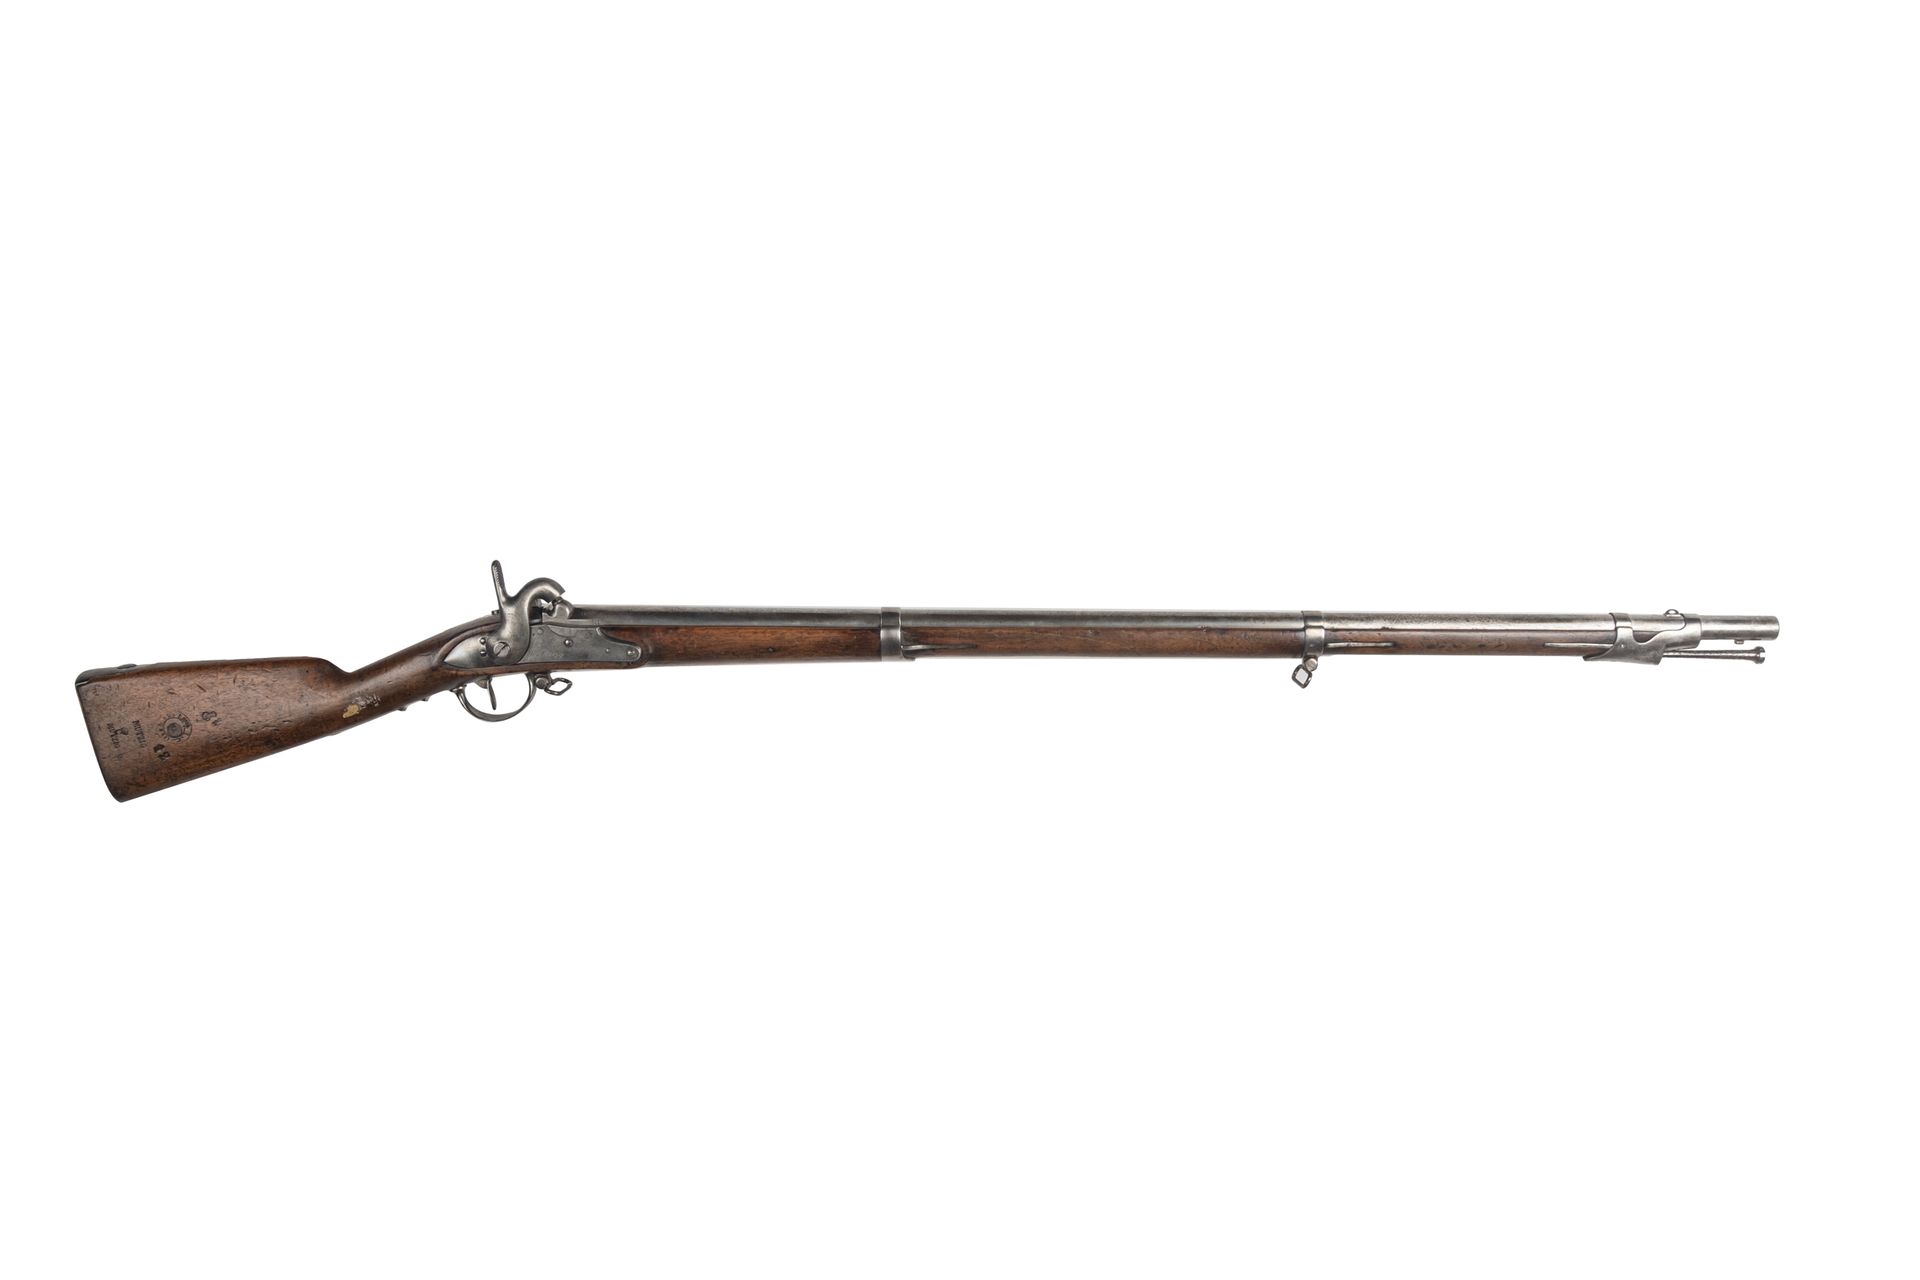 Null 步兵打击式步枪1822型T比斯新造。

圆形枪管，有雷鸣般的响声，盖有1860年的印章和日期。尾座

盖有 "1822年T Bis "Platine &hellip;